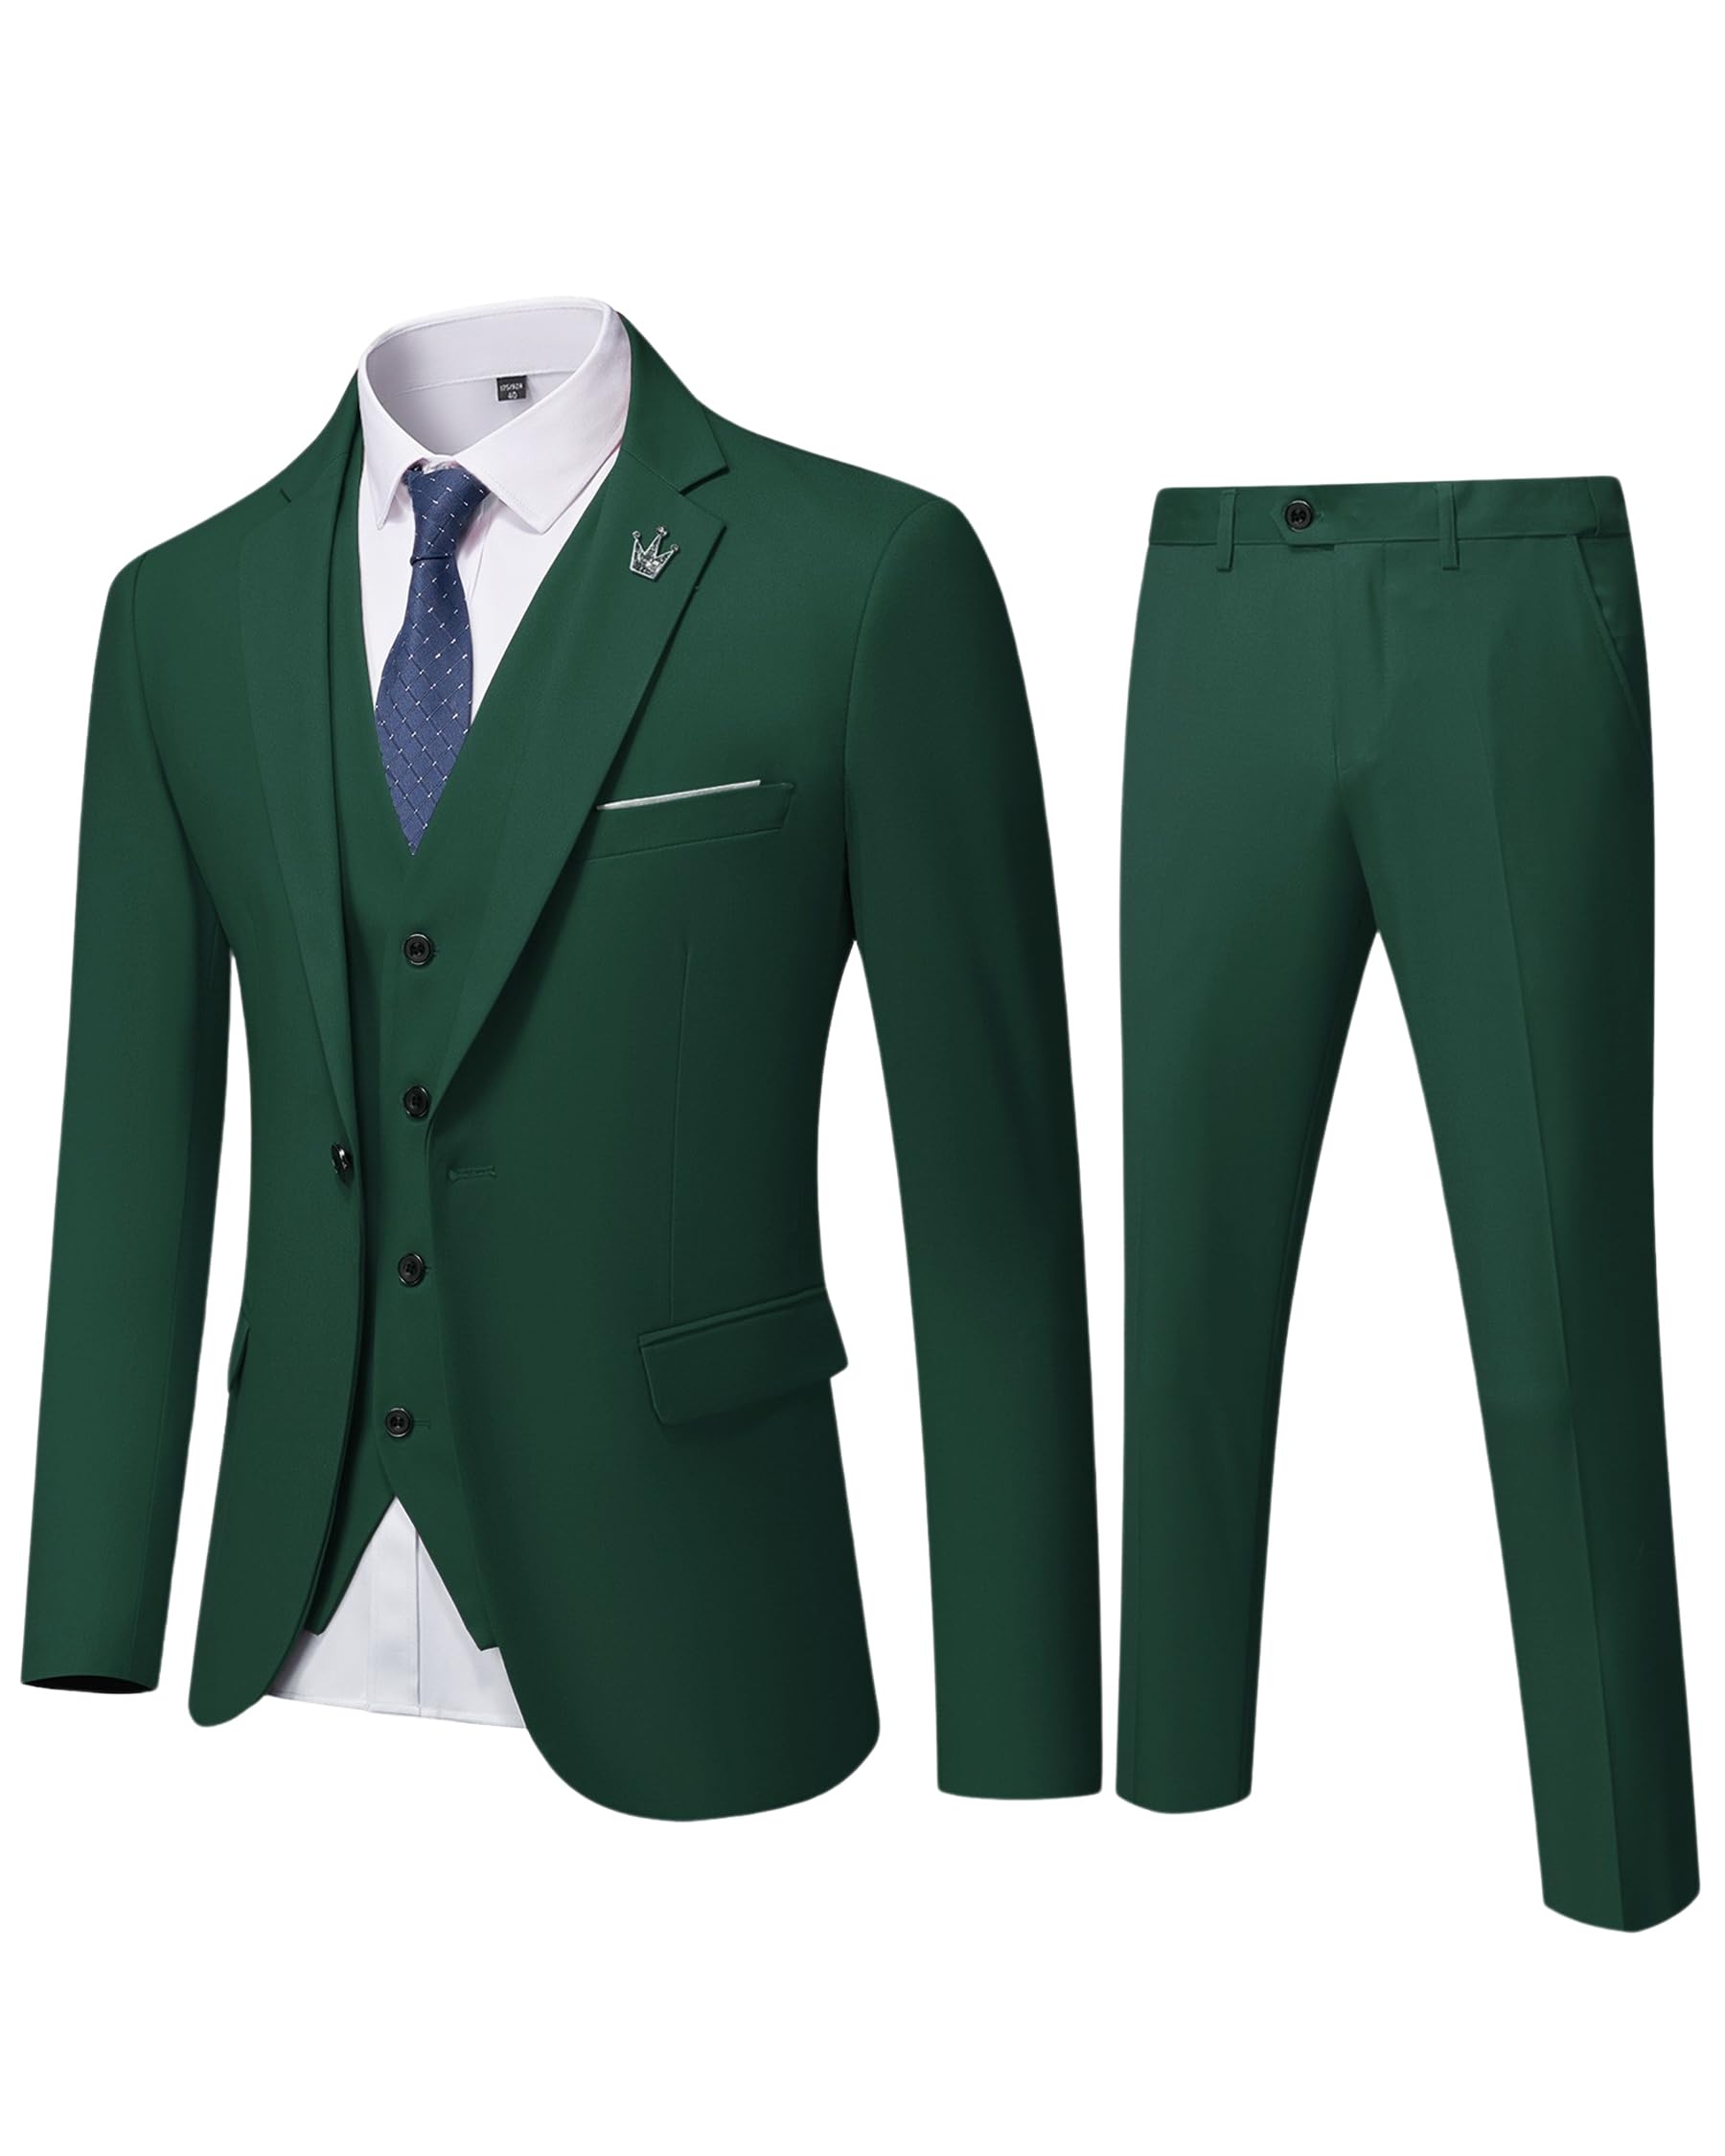 EastSide Herren Slim Fit 3-teiliger Anzug, Ein-Knopf-Blazer-Set, Jacke, Weste und Hose, dunkelgrün, XS